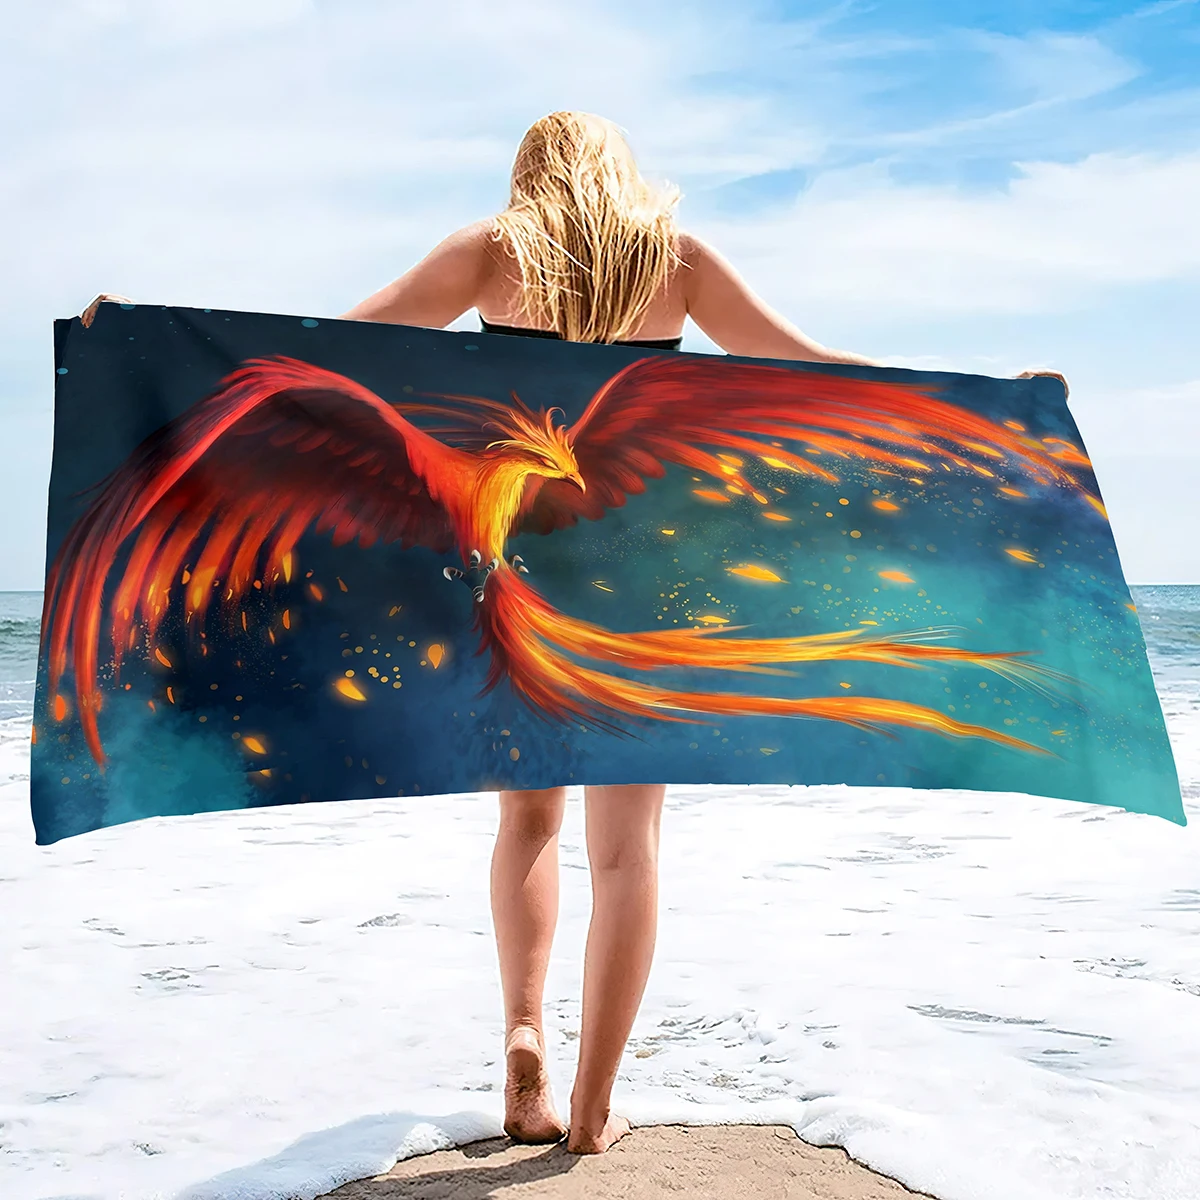 Пляжное полотенце Phoenix из микрофибры Quick Dry Sand Free Travel s Легкий бассейн, тренажерный зал для плавания 